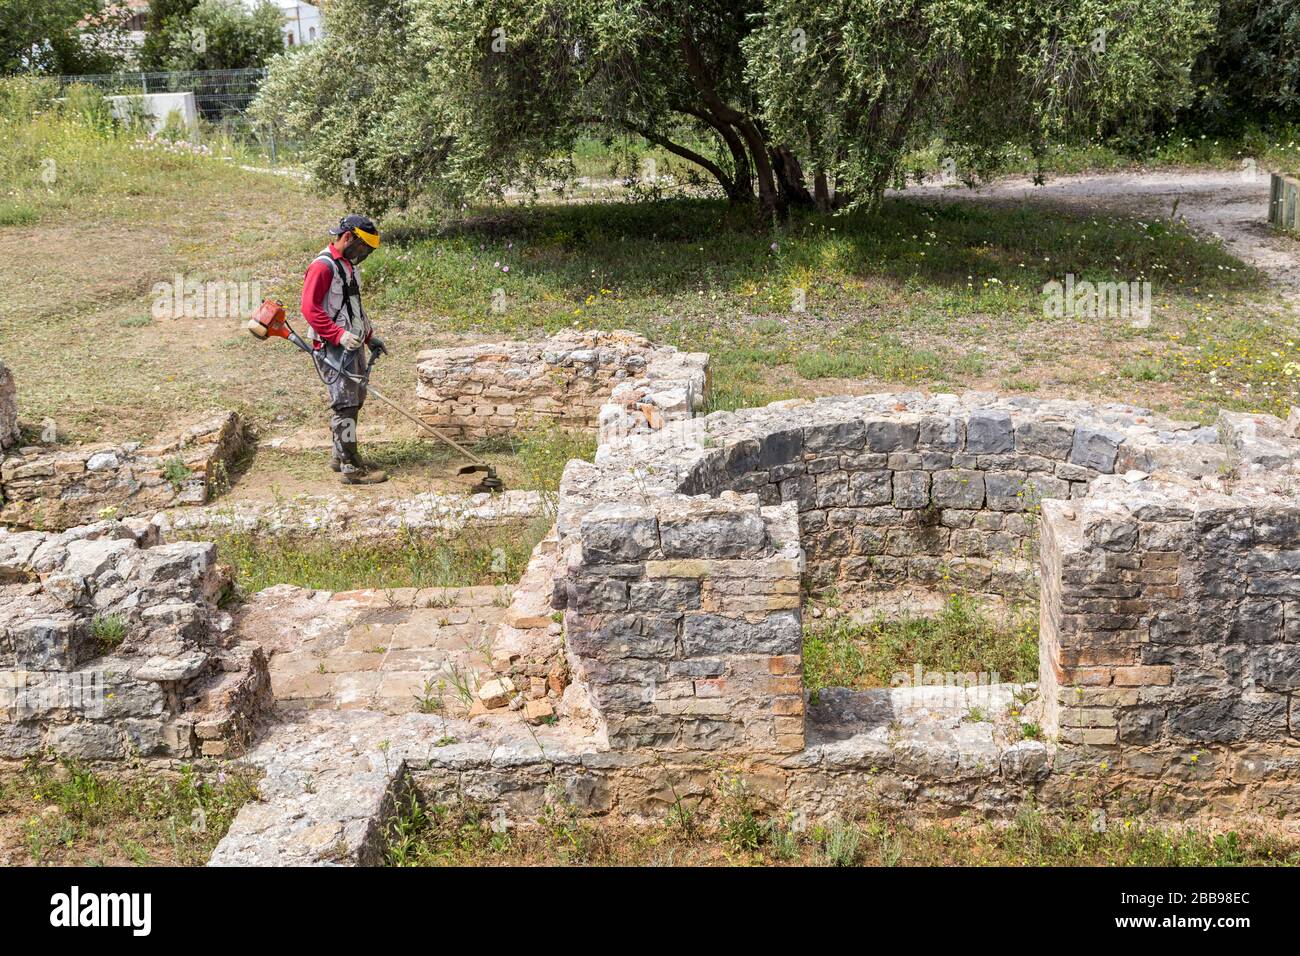 Wokman desbrotando malezas en las ruinas romanas de Milreu, Algarve, Portugal Foto de stock